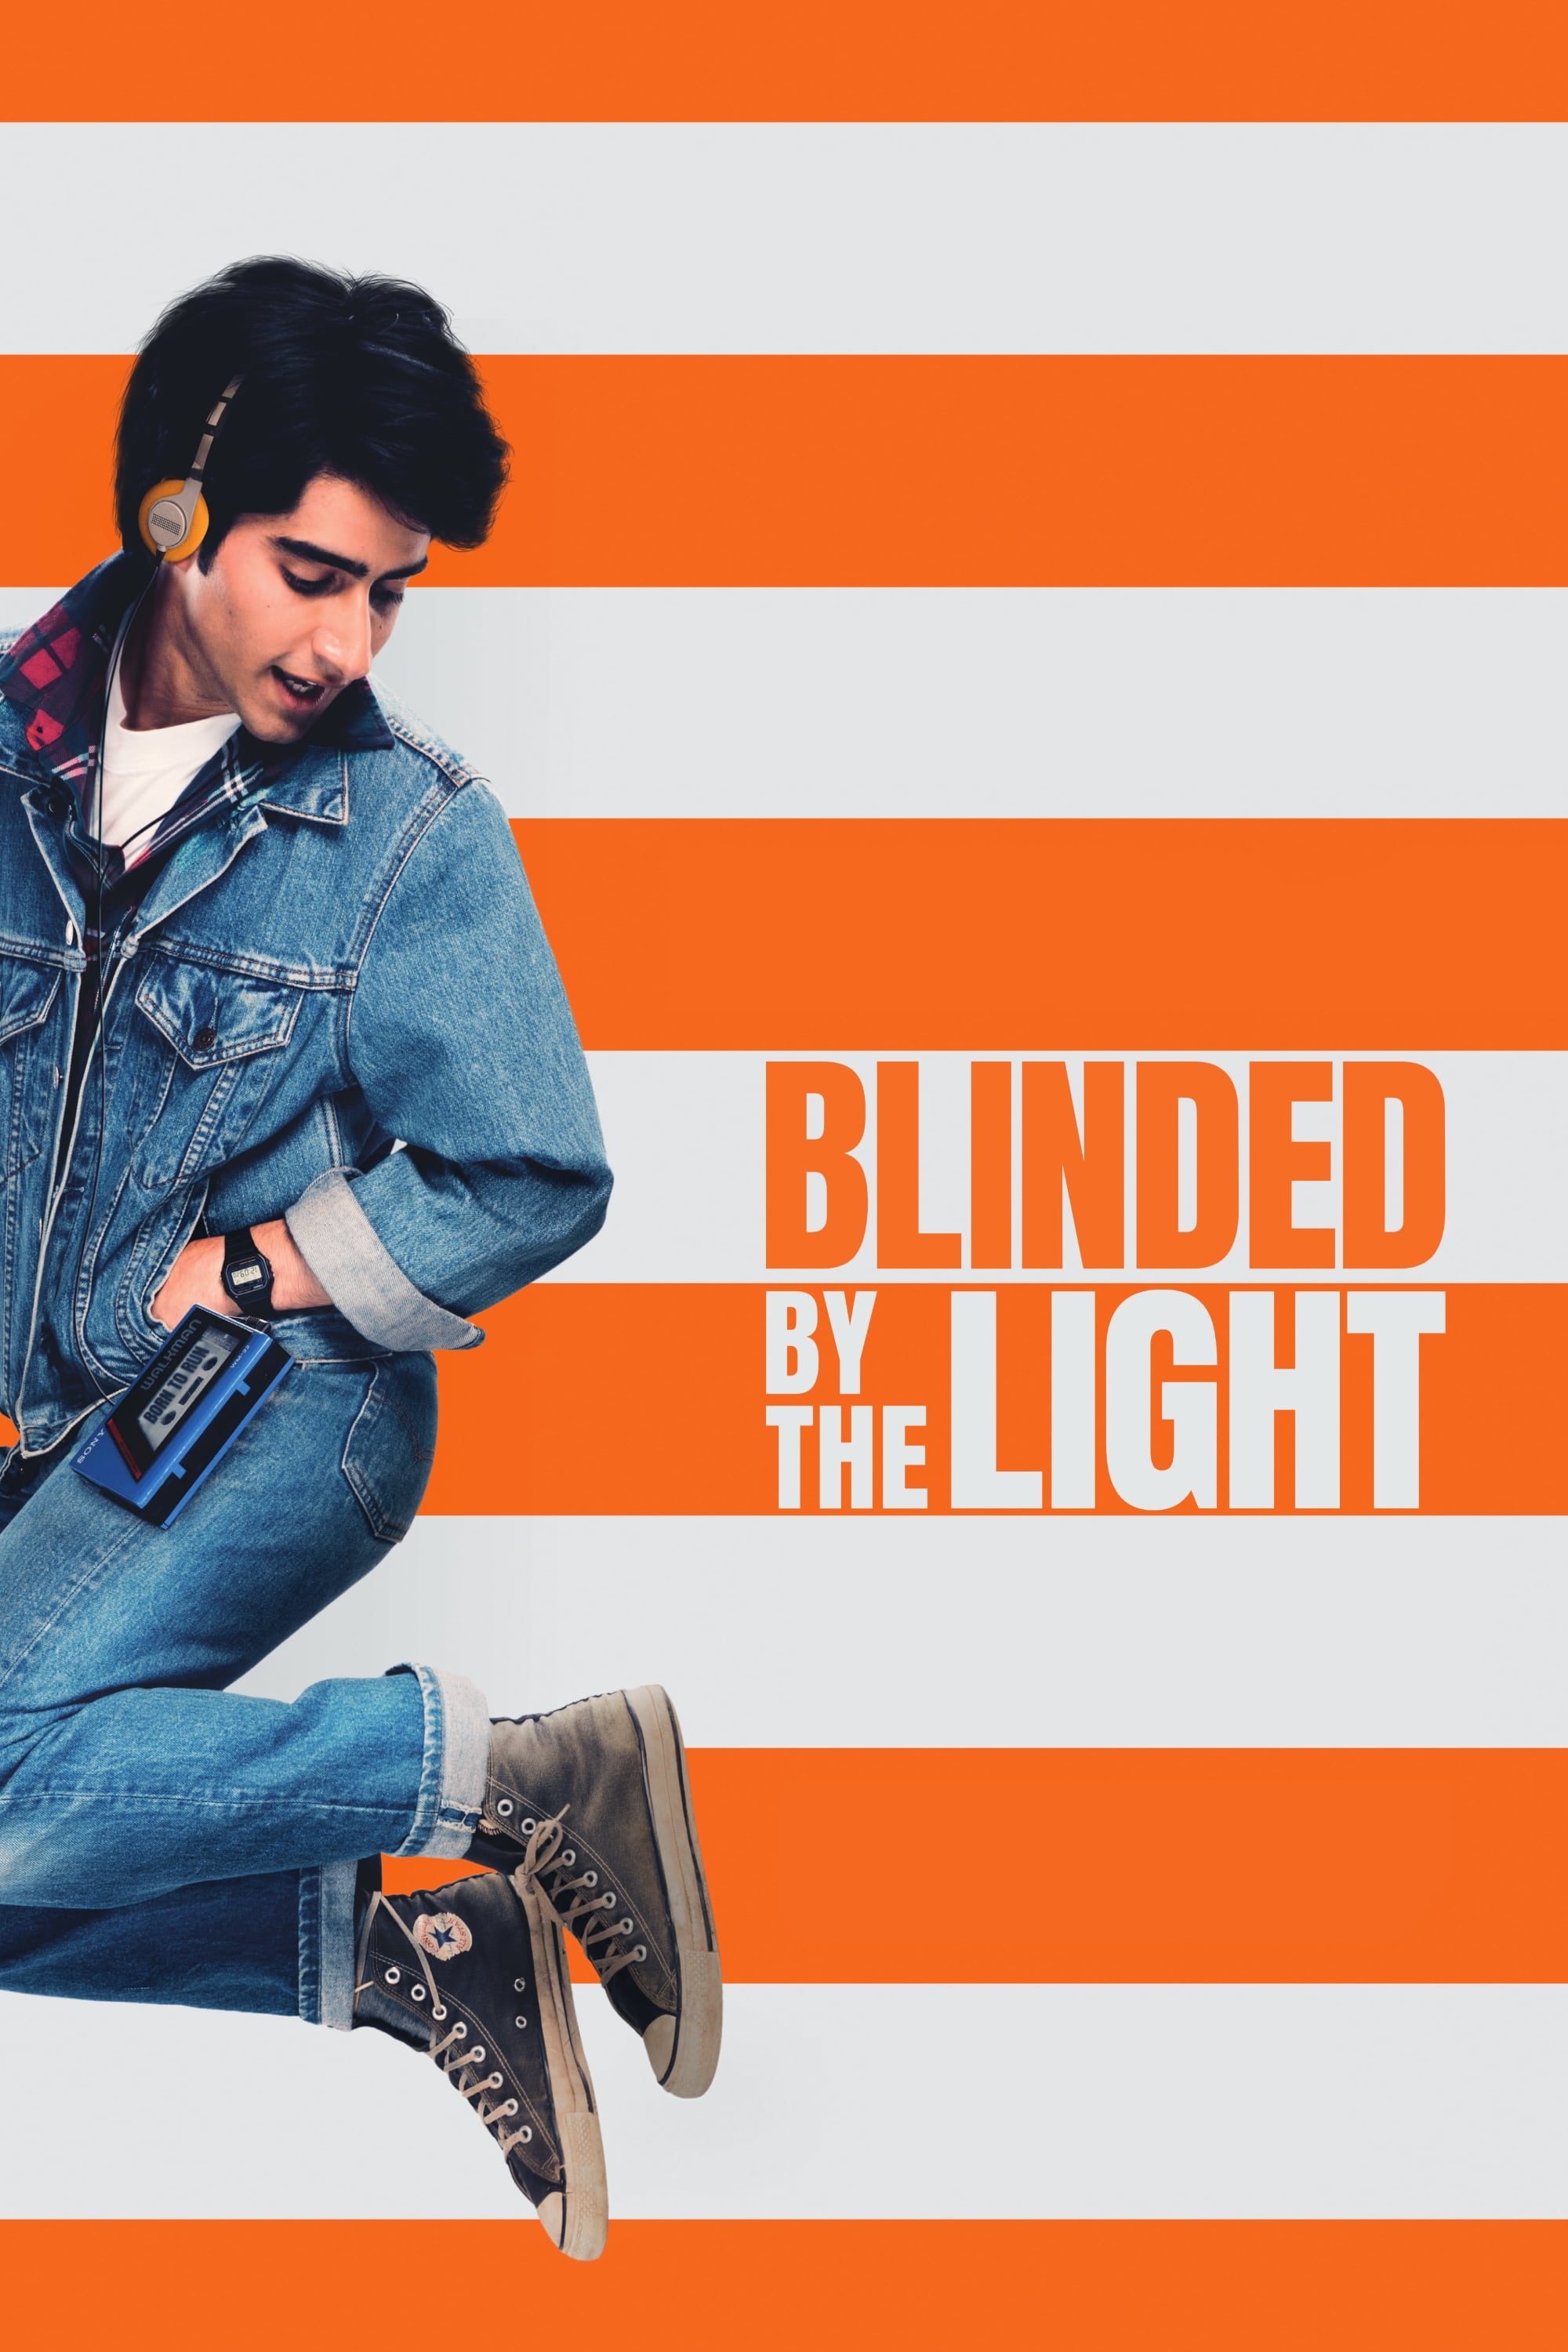 Blinded by the Light (Cegado por la luz) (2019)